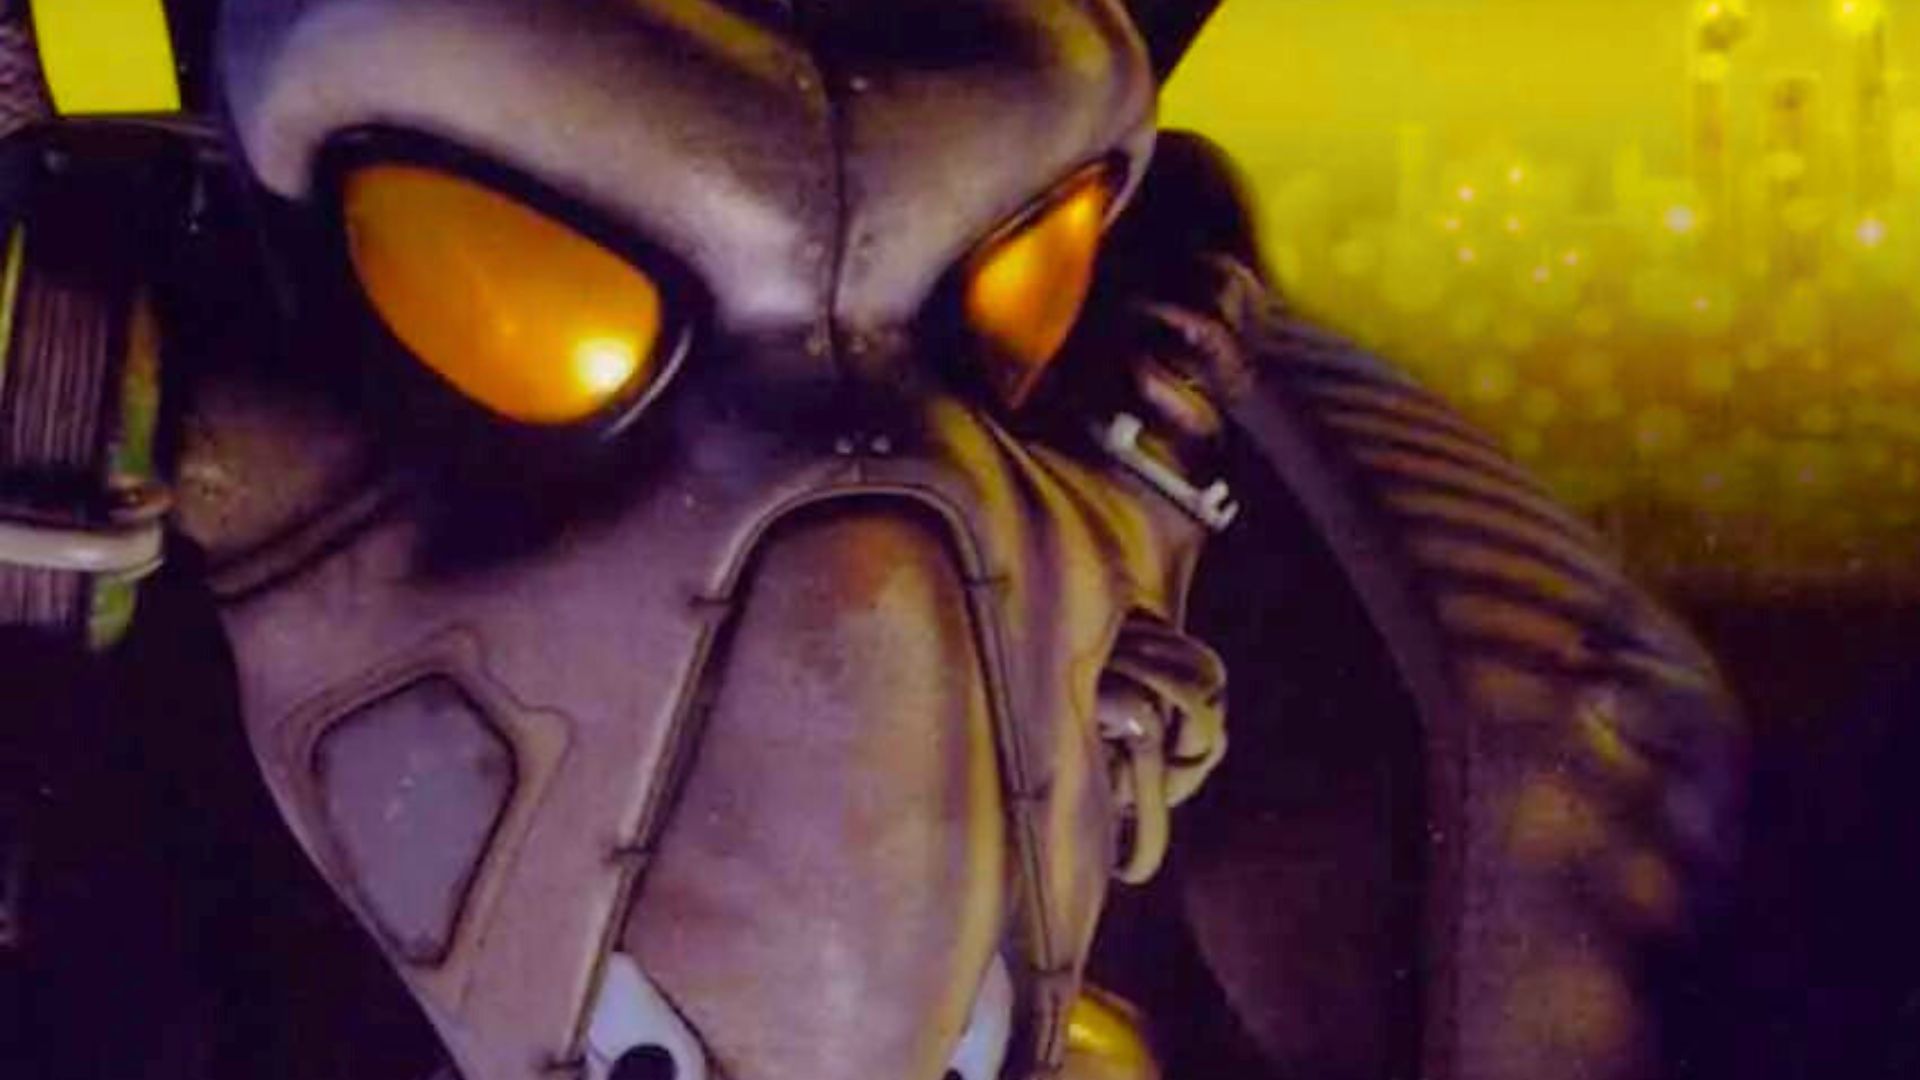 De geweldige Fallout-klassieker is gedurende een beperkte tijd beschikbaar als gratis spel